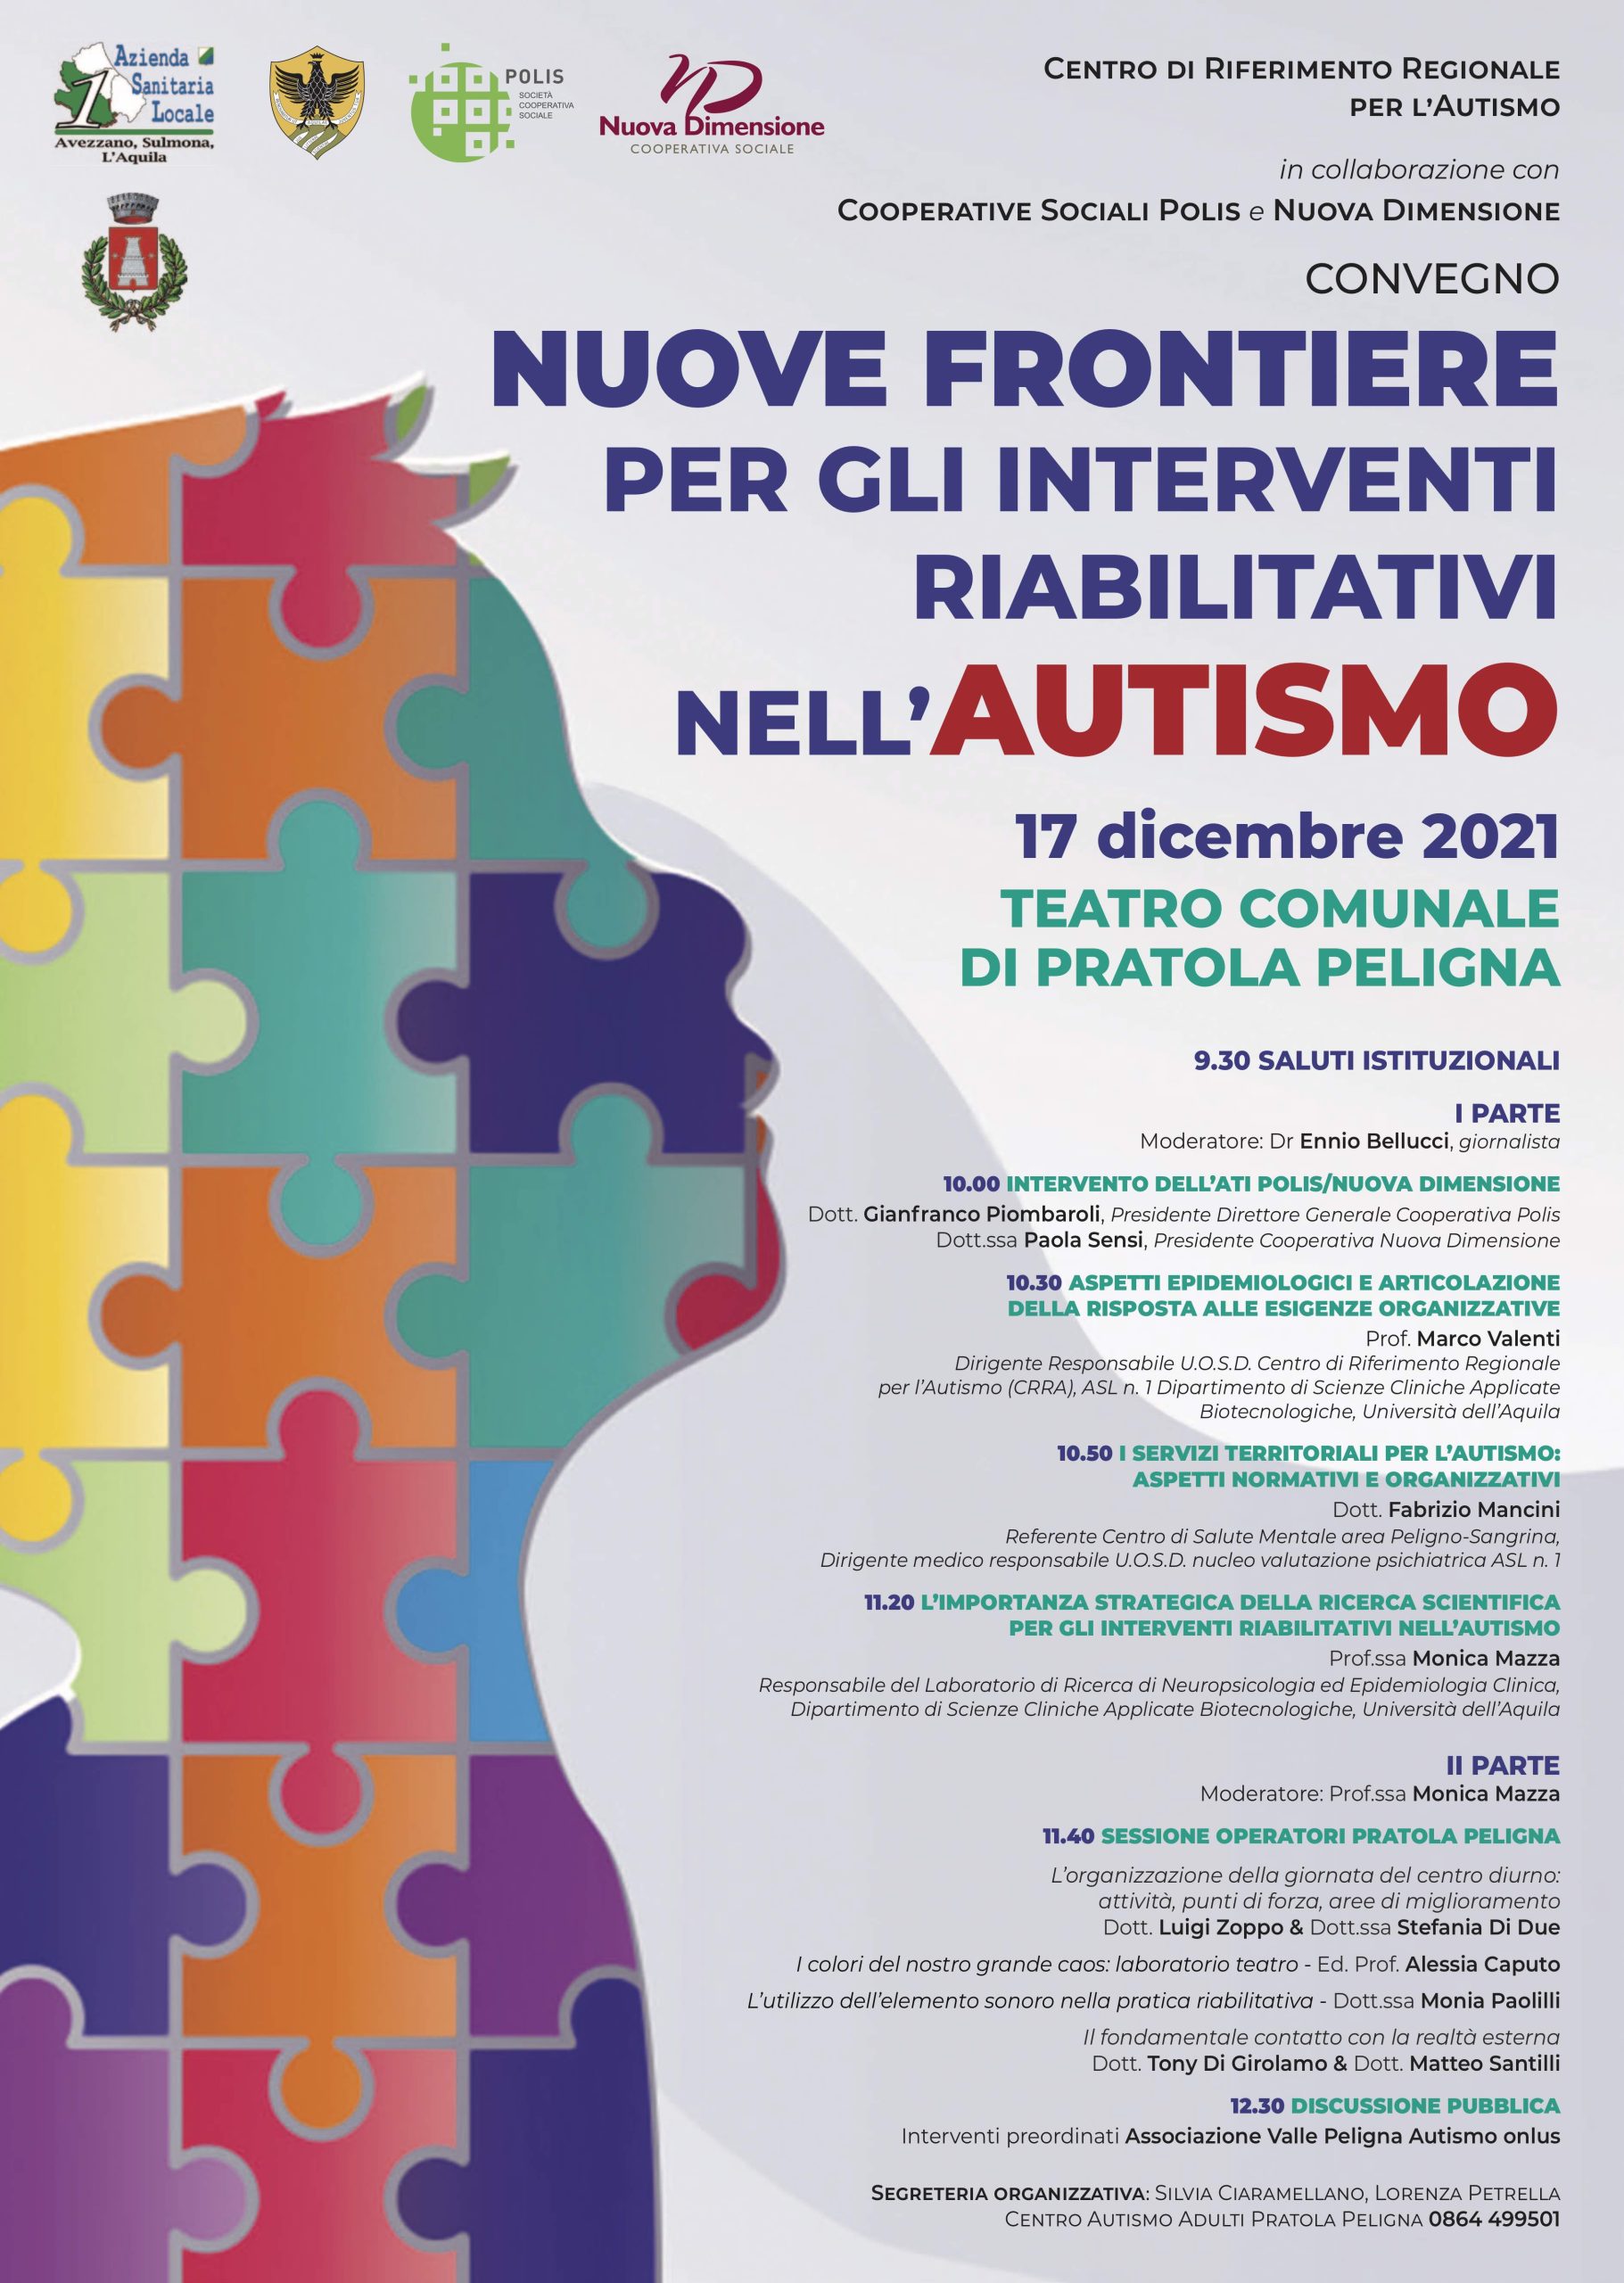 Una giornata per parlare di autismo, disturbi del neuro-sviluppo e interventi riabilitativi